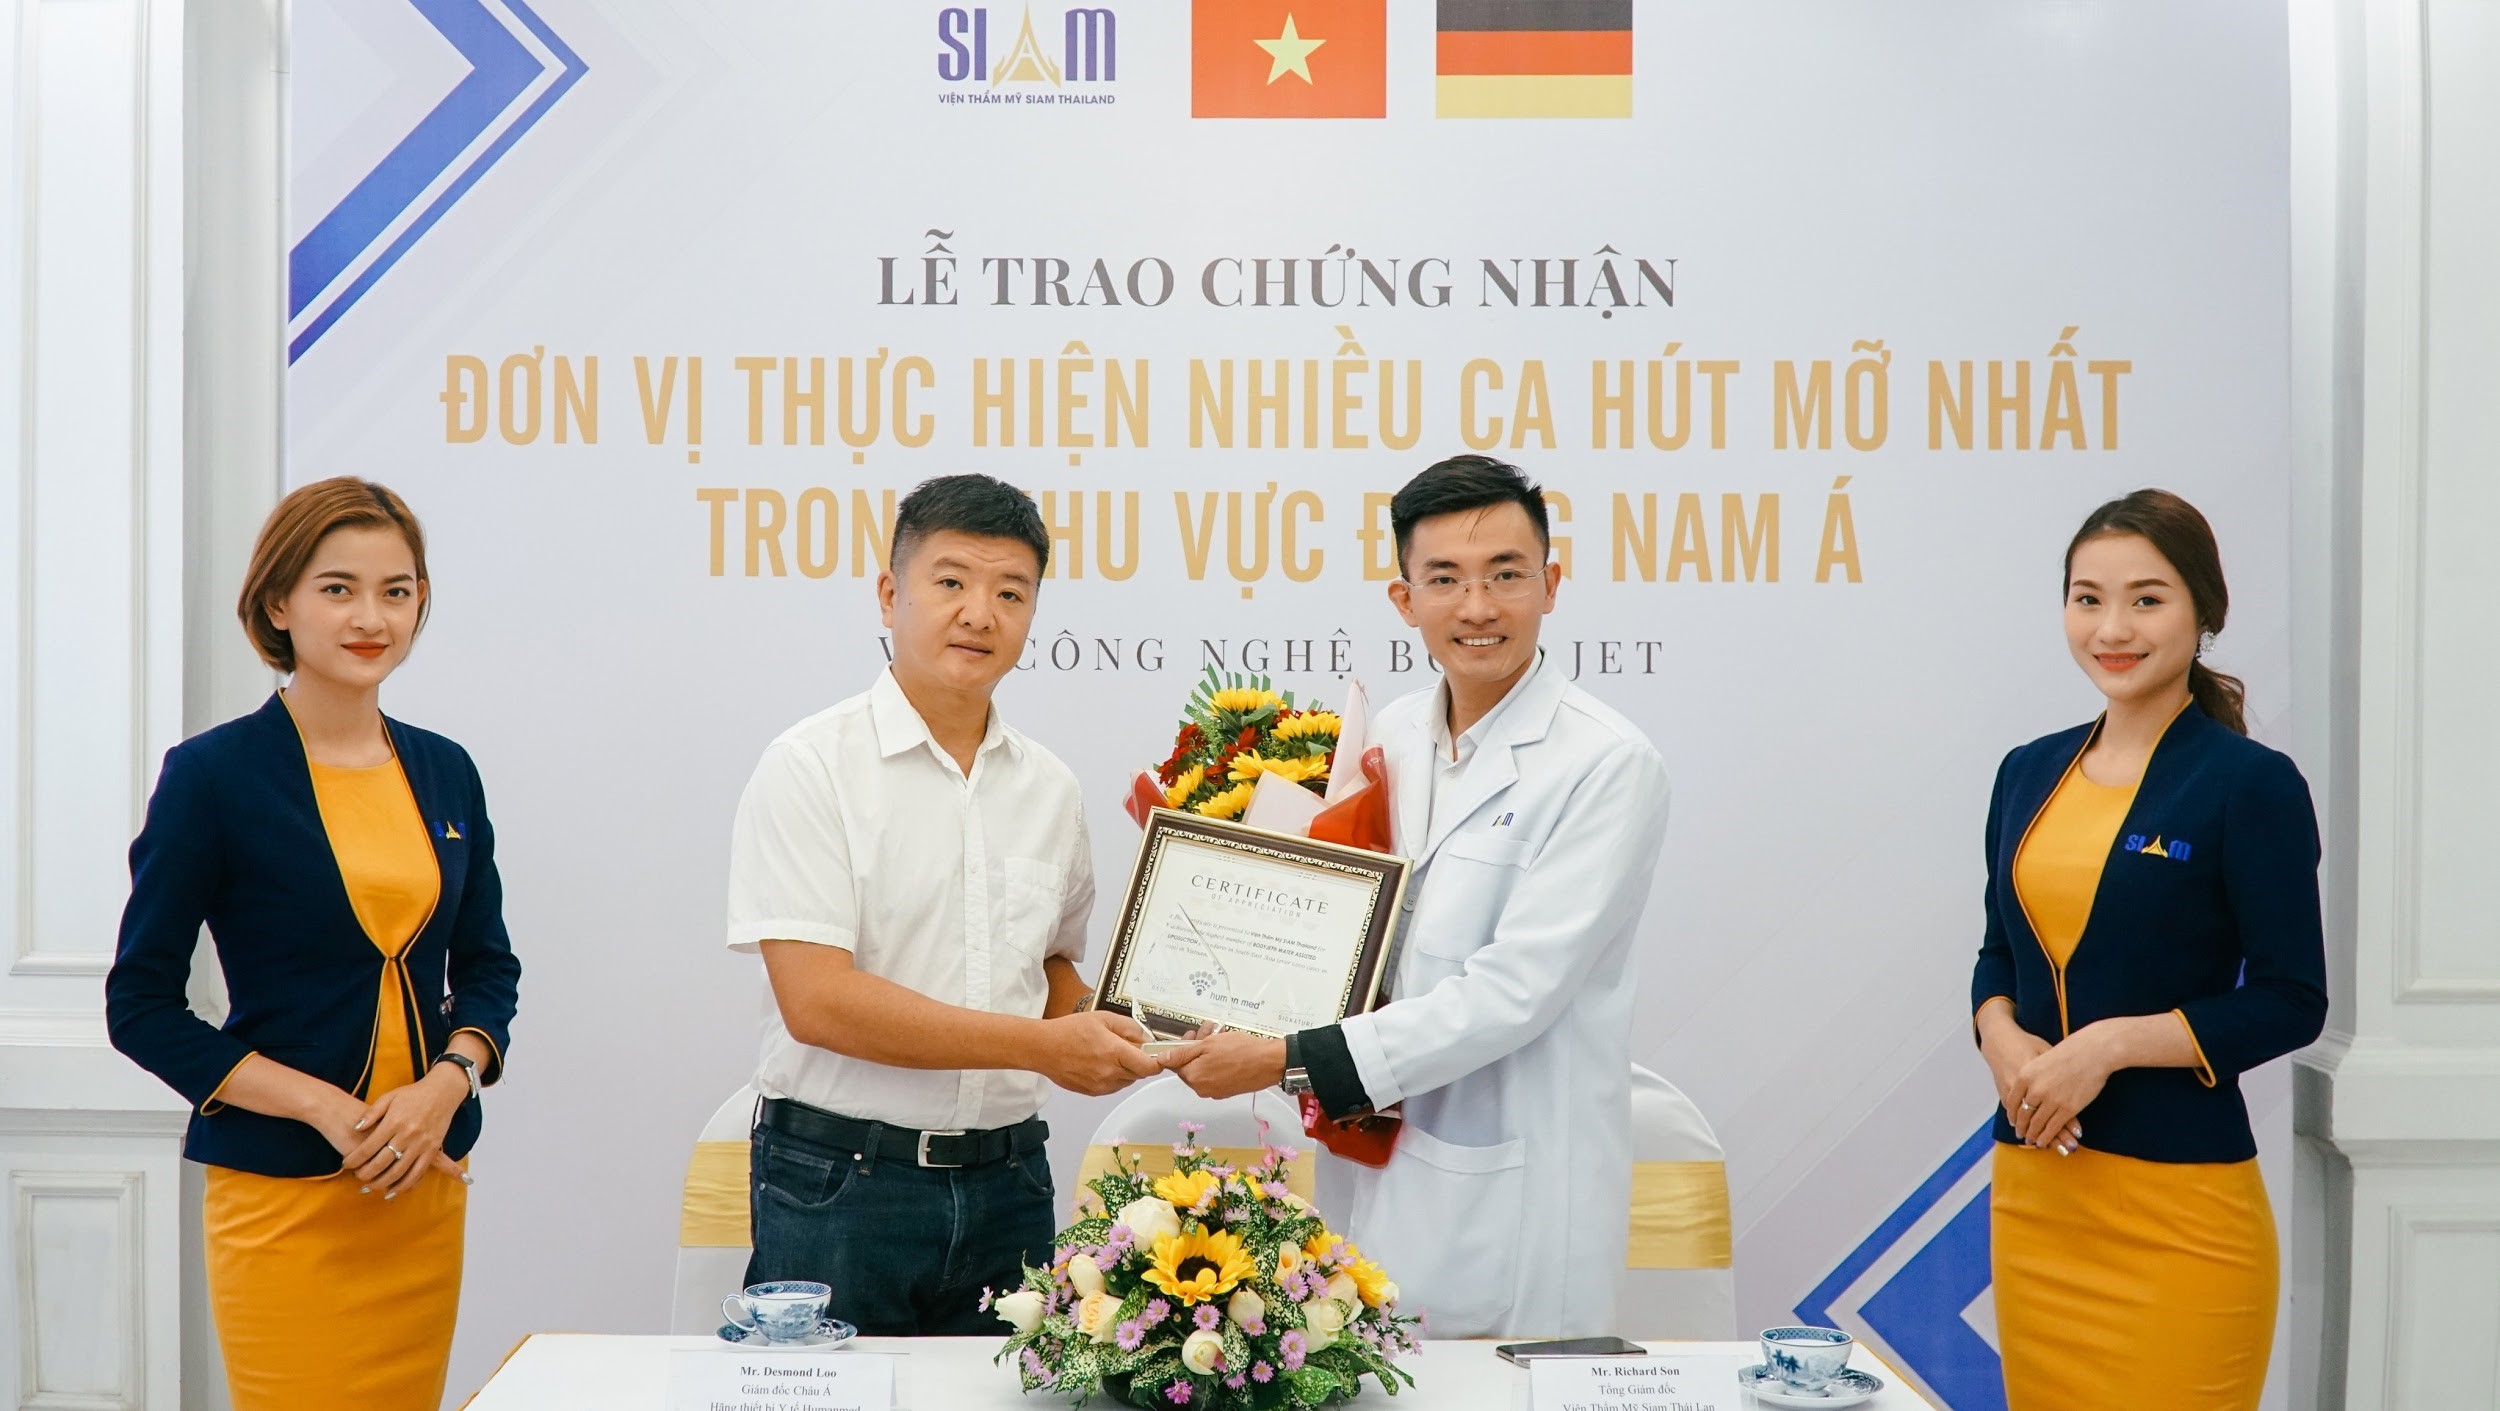 CEO Thái Hoàng Sơn: “Thẩm mỹ tạo vẻ đẹp tuyệt tác trong từng centimet” - ảnh 2